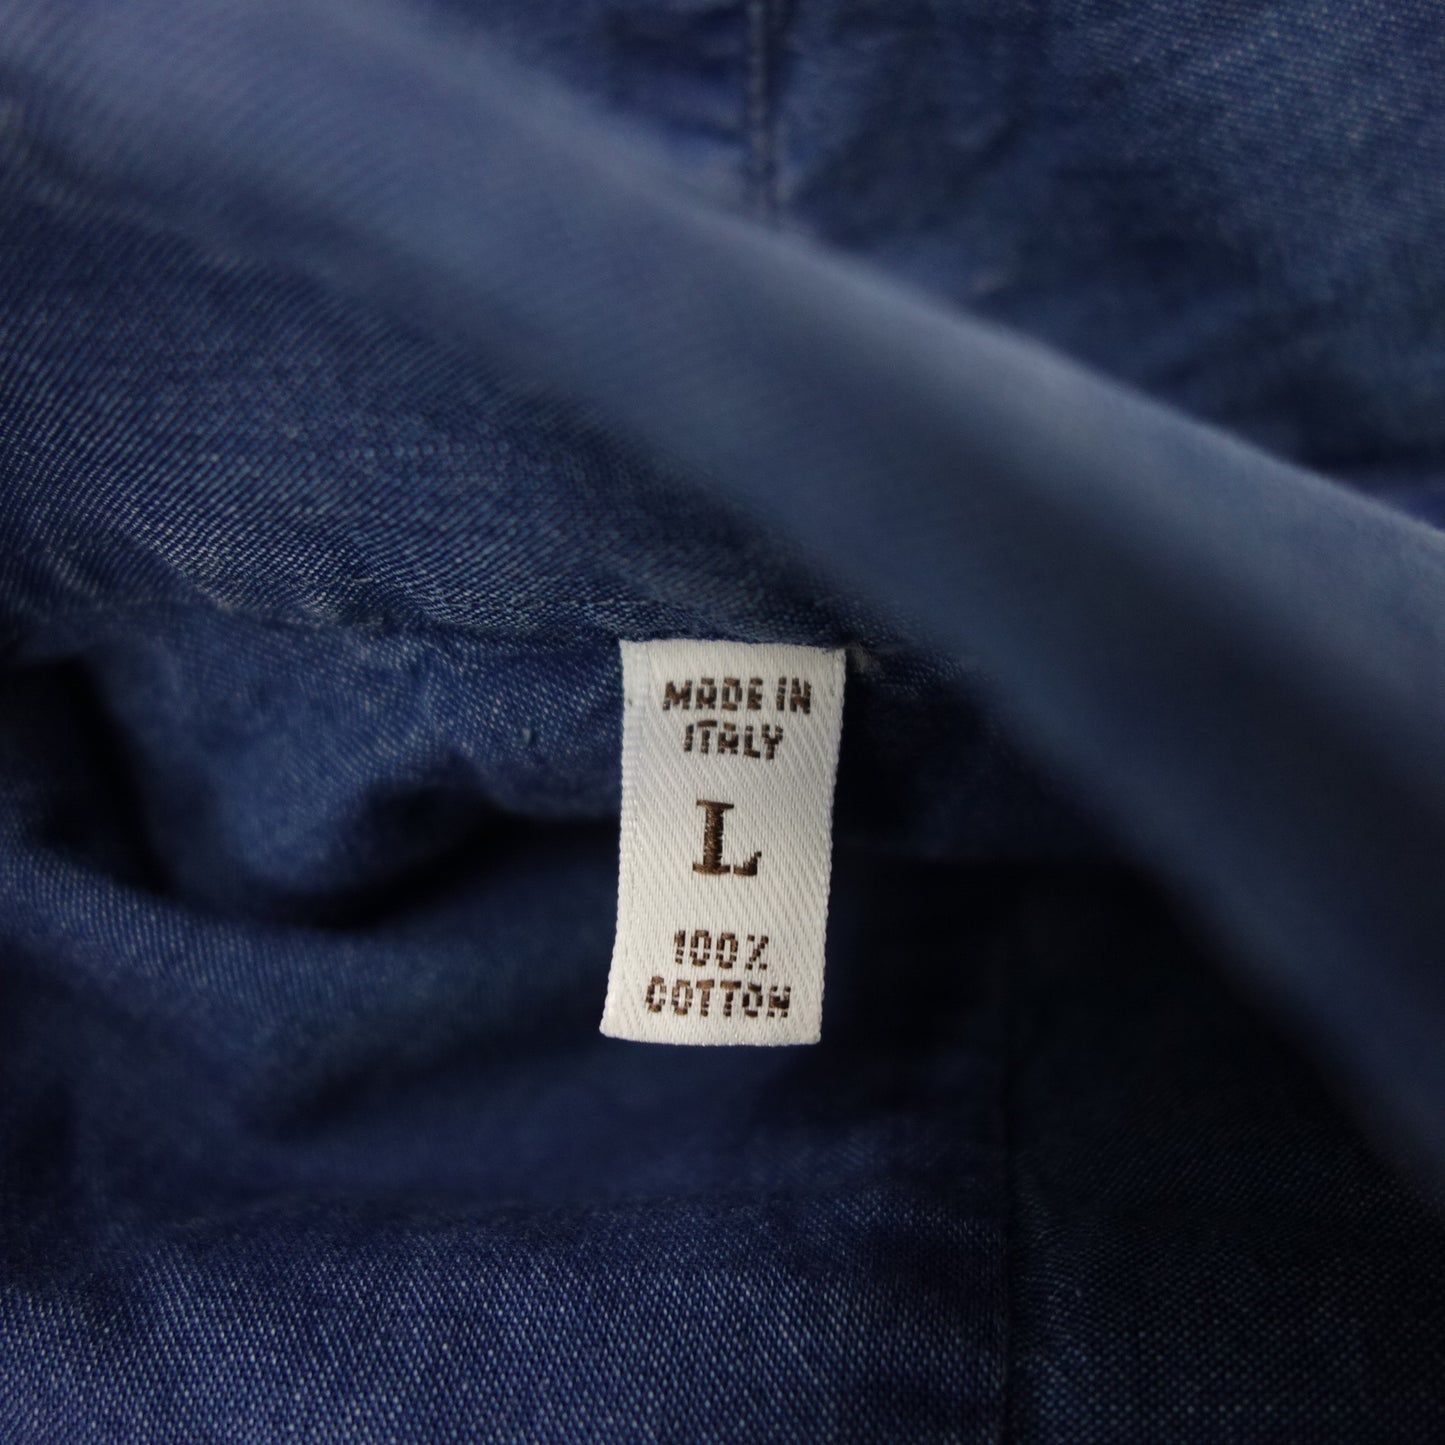 未使用◆Brunello Cucinelli 衬衫牛仔布 100% 棉 L 码修身男士蓝色 BRUNELLO CUCINELLI [AFB35] 